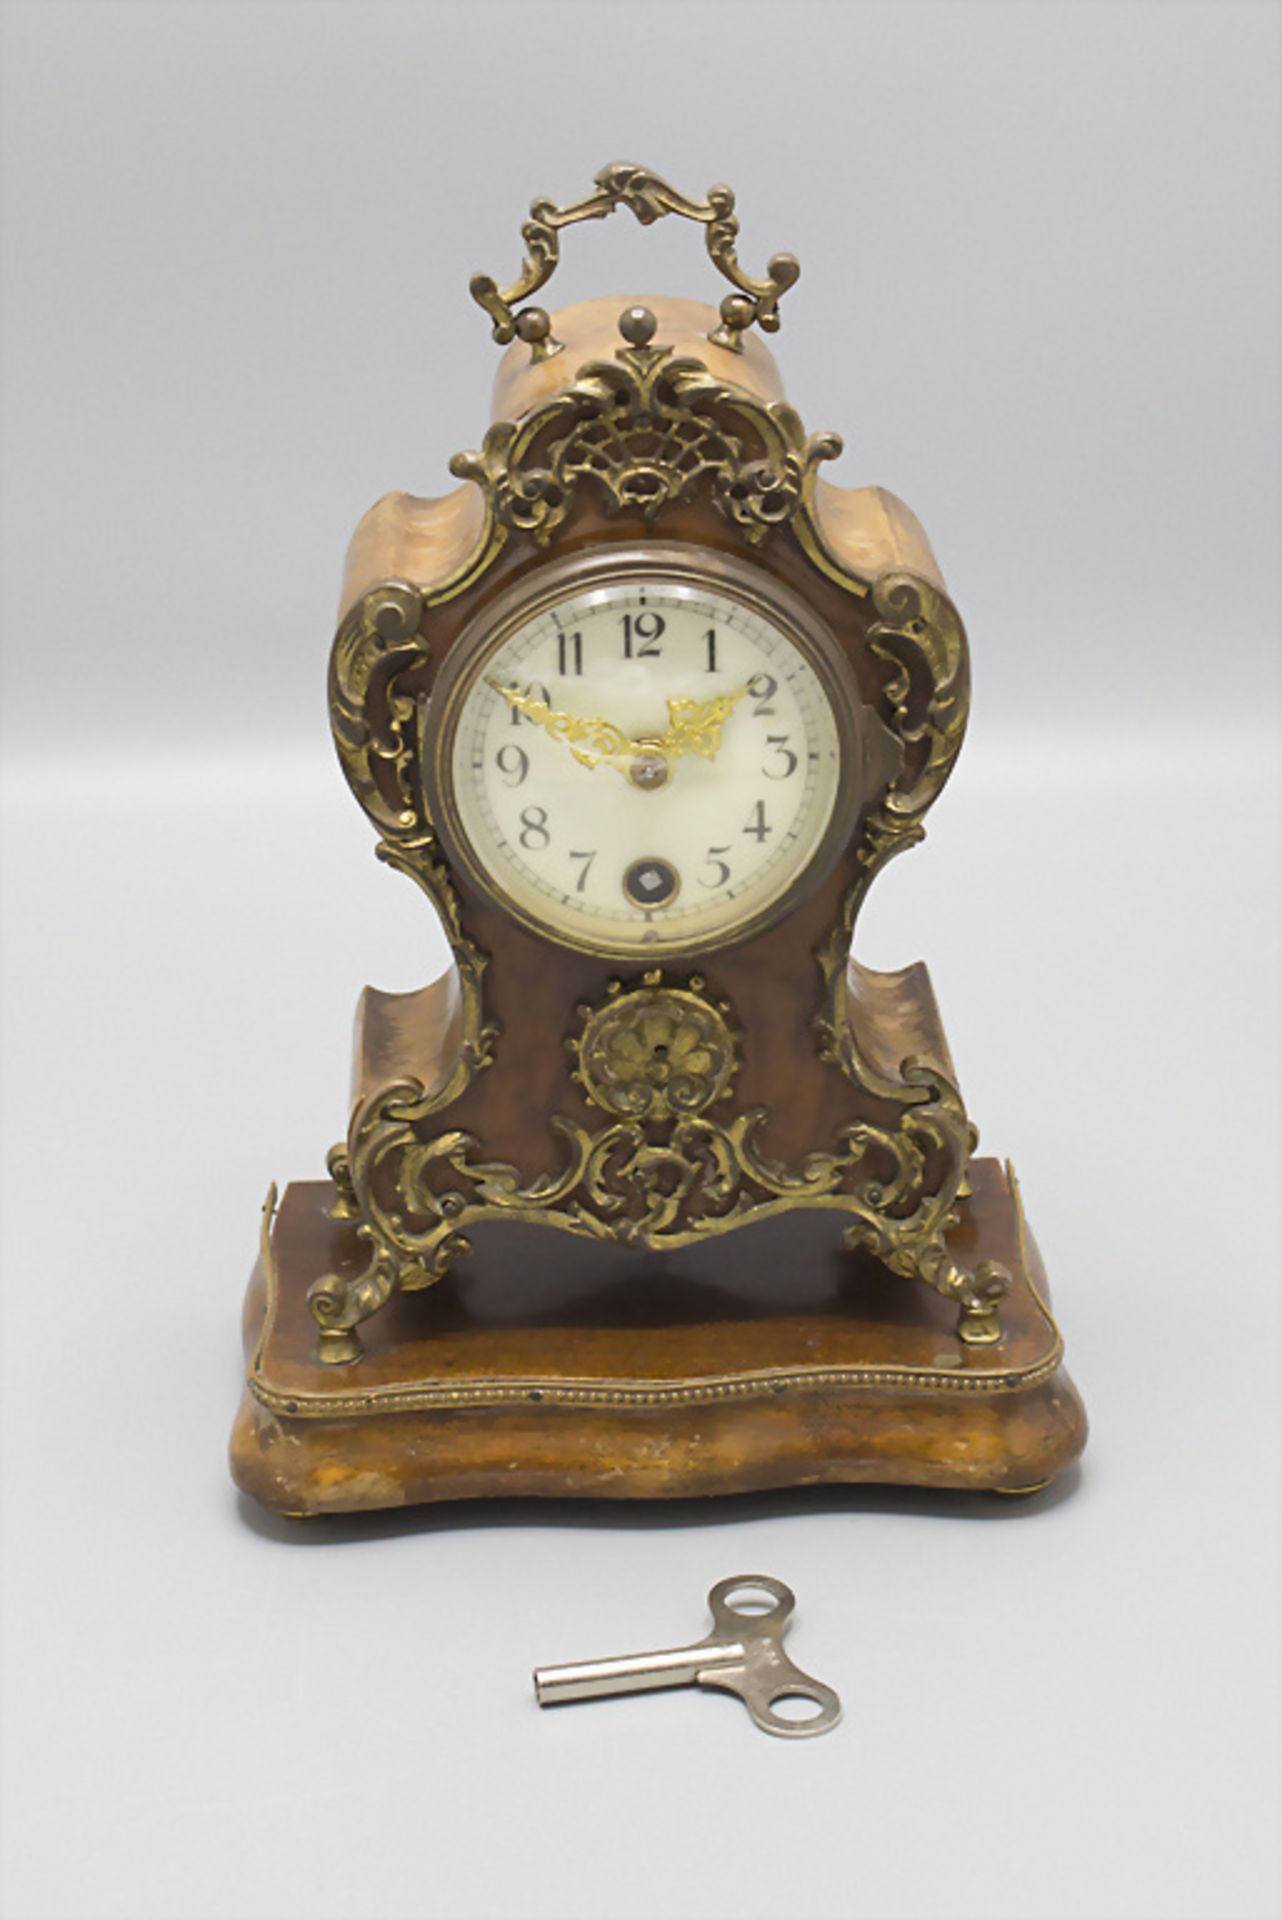 Lenzkirch Kaminuhr / A mantelpiece clock, um 1910